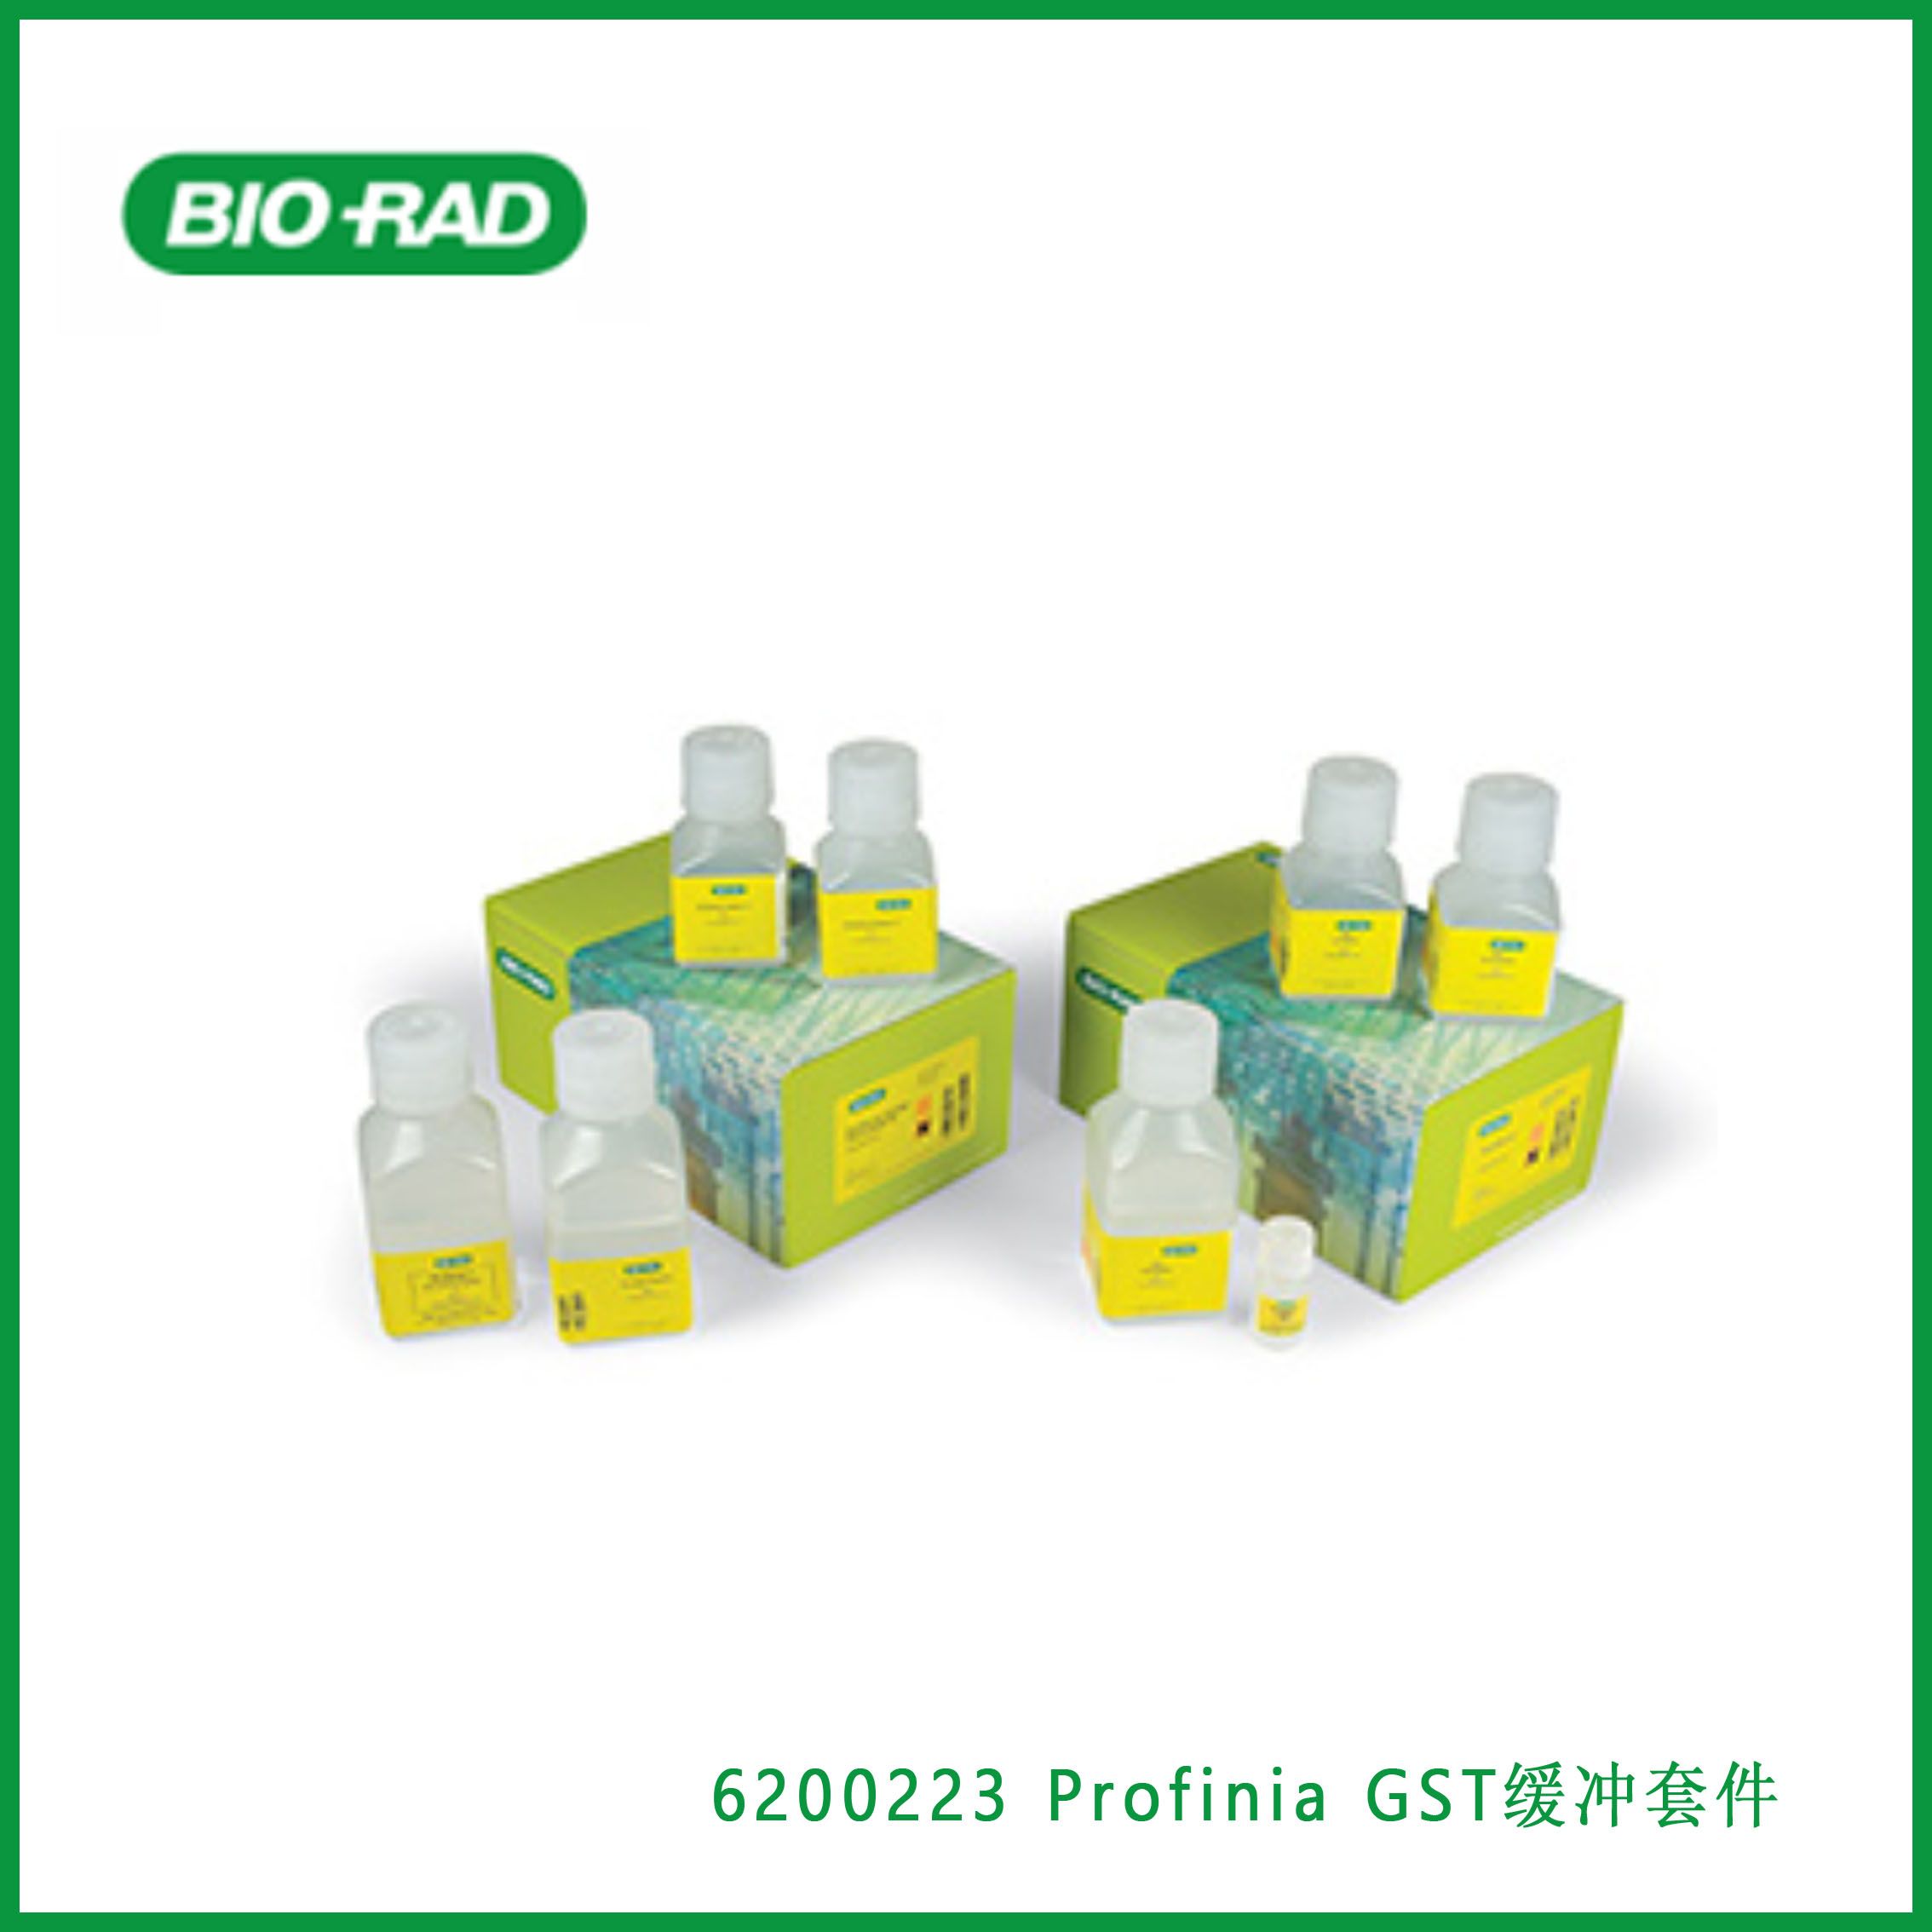 伯乐Bio-Rad 6200223 Profinia GST Buffer Kit，Profinia GST缓冲套件，现货